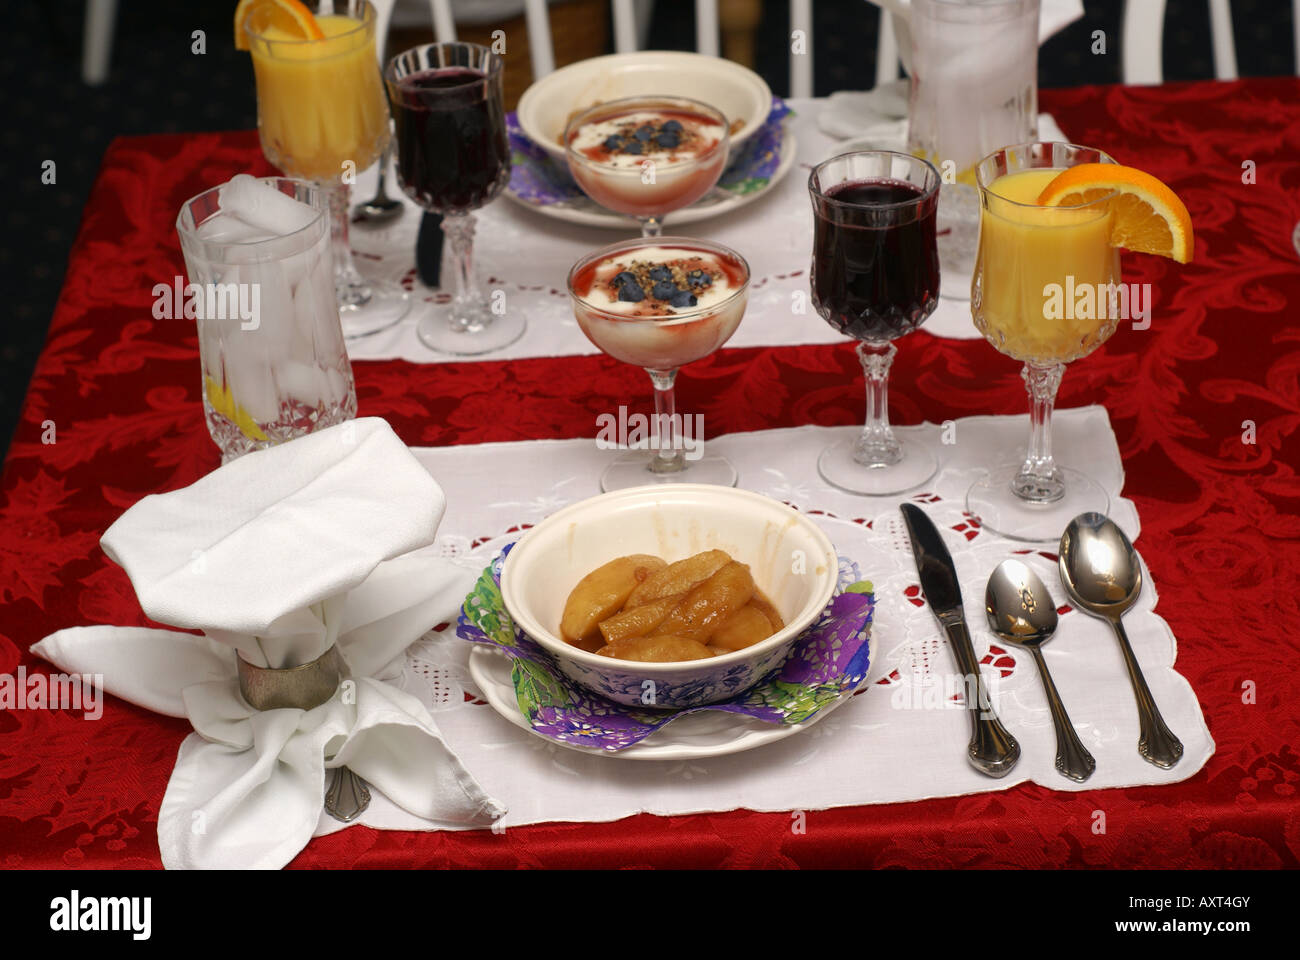 Breakfast table Stock Photo